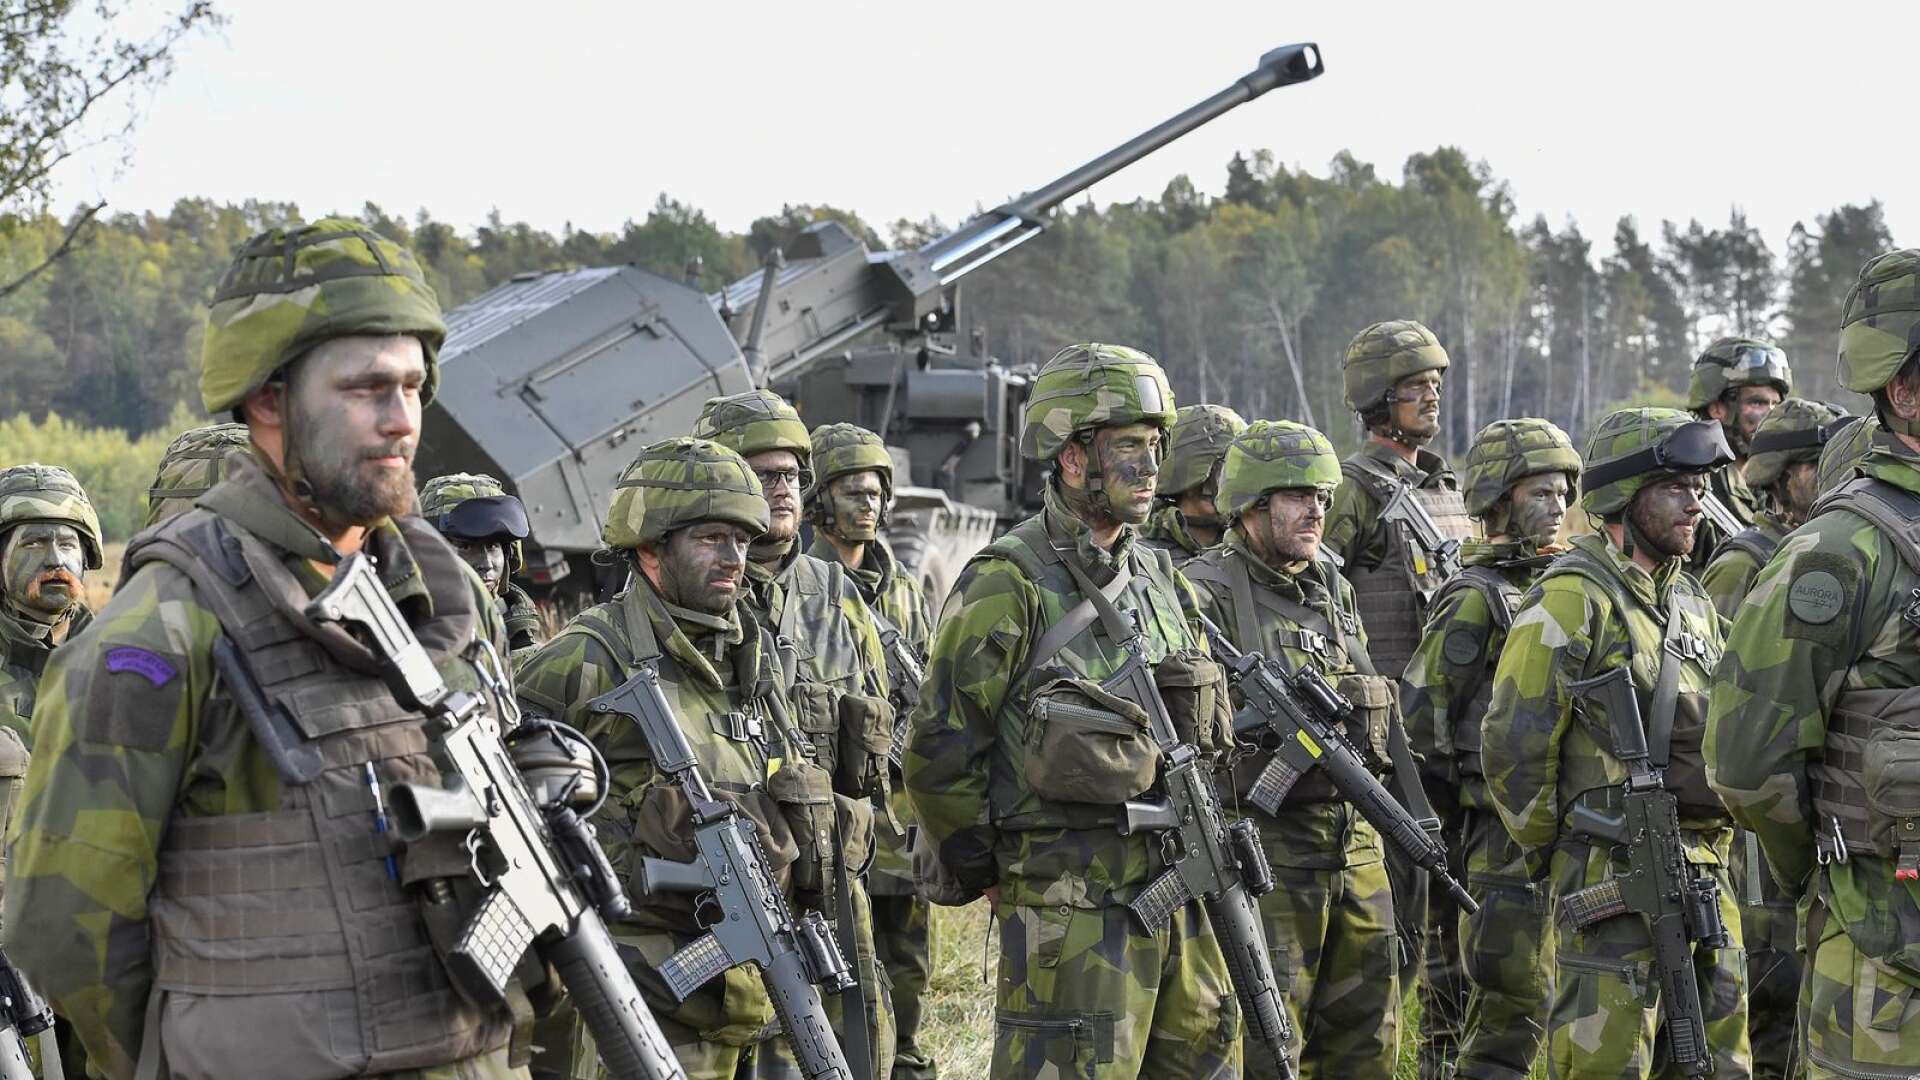 Försvarsmaktens informationskampanj för den stundande storövningen går inte i takt med länsstyrelsen i Örebro.